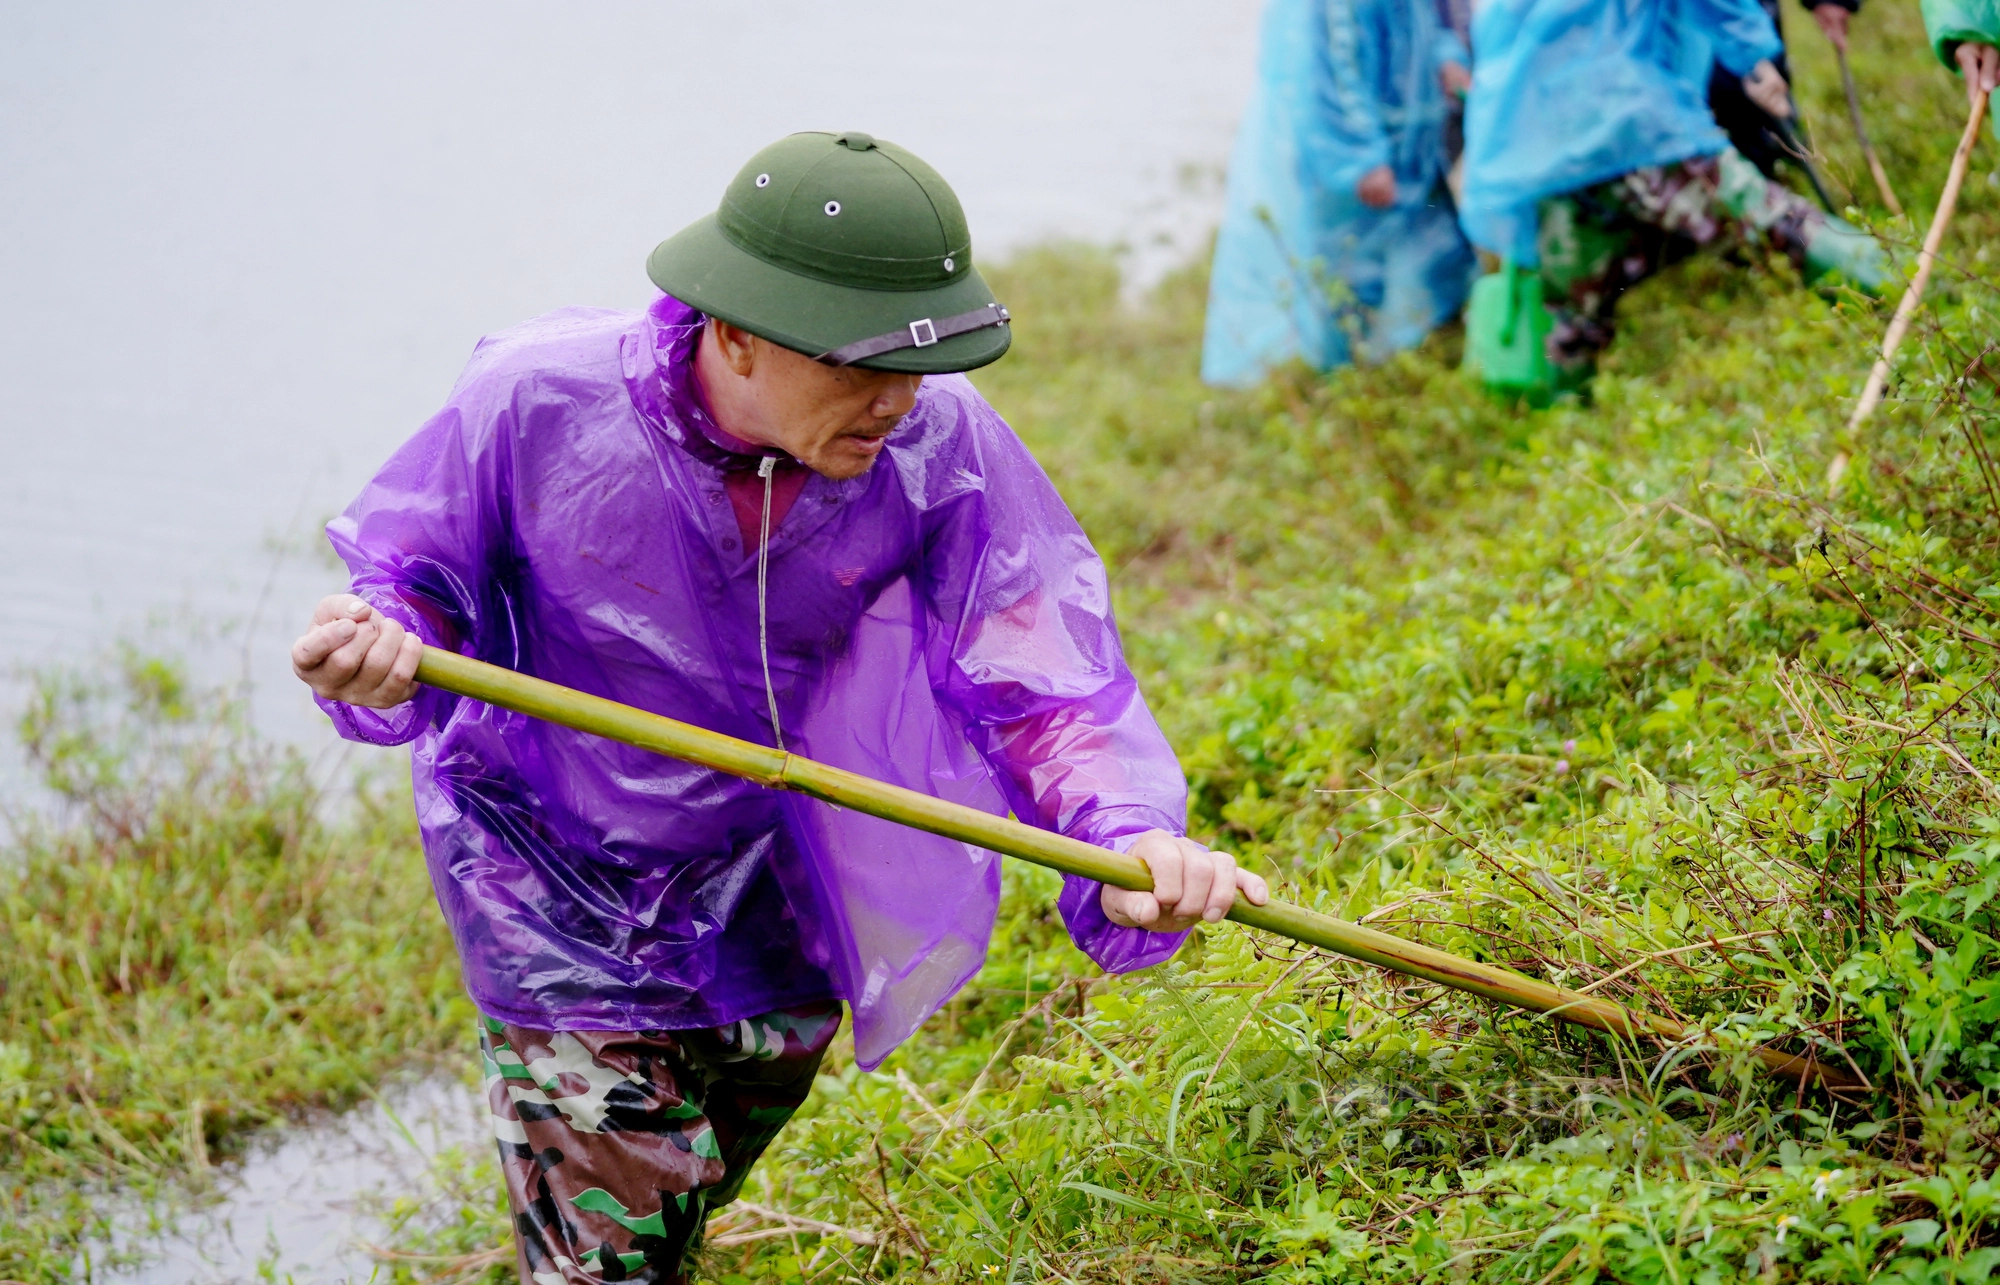 Cả làng ở Hà Tĩnh “đội mưa” cùng nhau lội nước đi bắt chuột bảo vệ mùa màng - Ảnh 14.